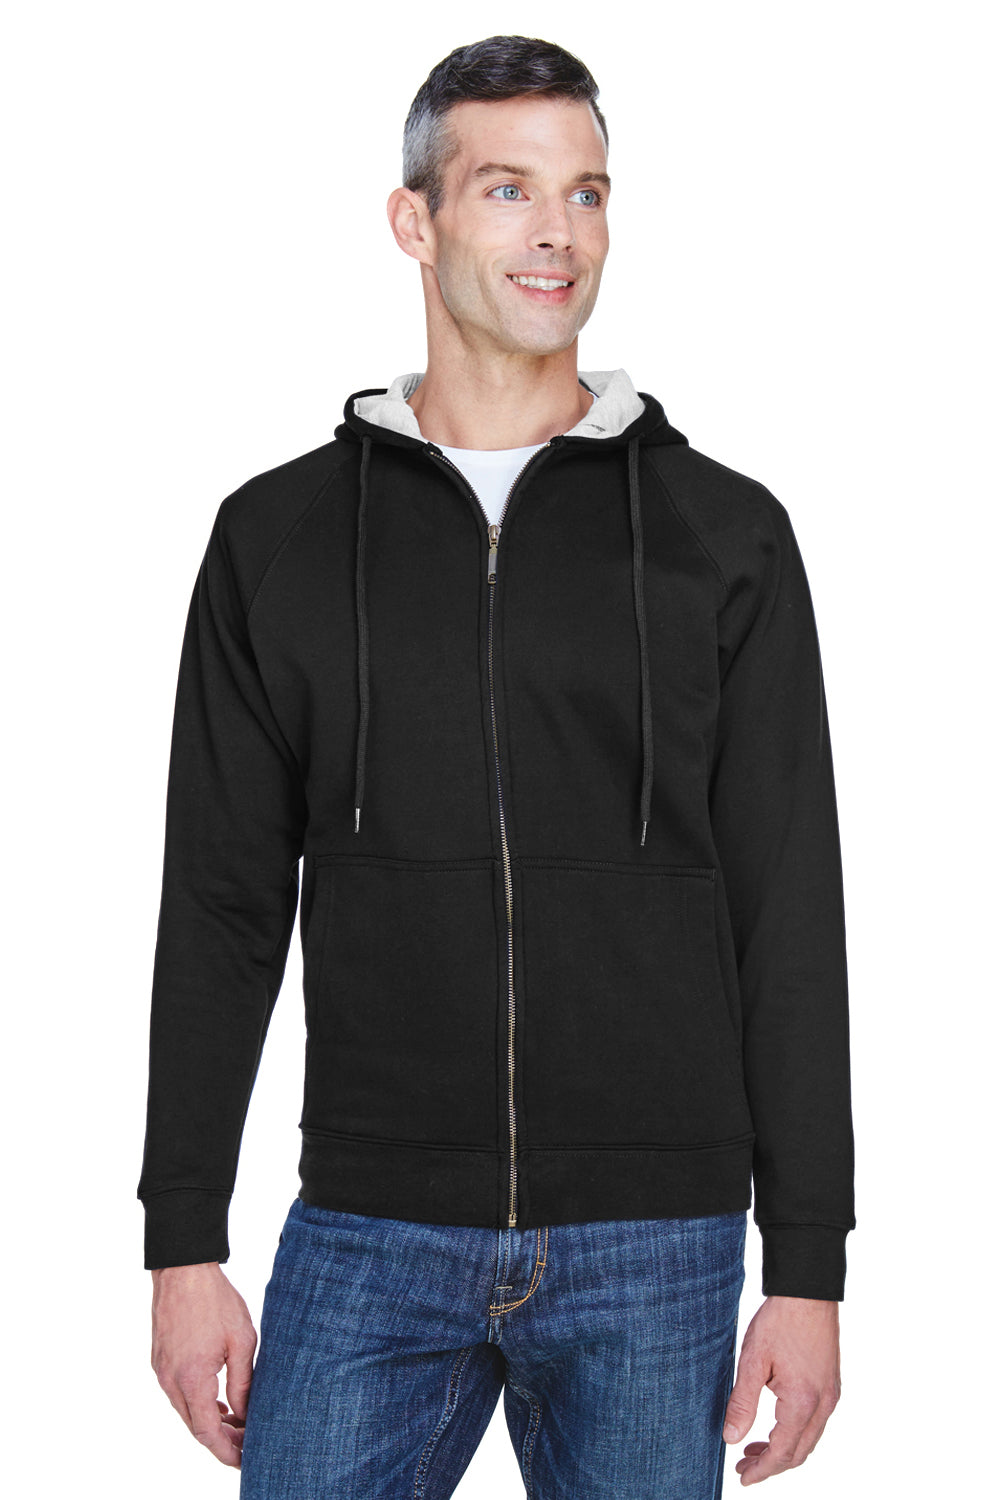 UltraClub 8463 Mens Rugged Wear Water Resistant Fleece Full Zip Hooded Sweatshirt Hoodie Black Front